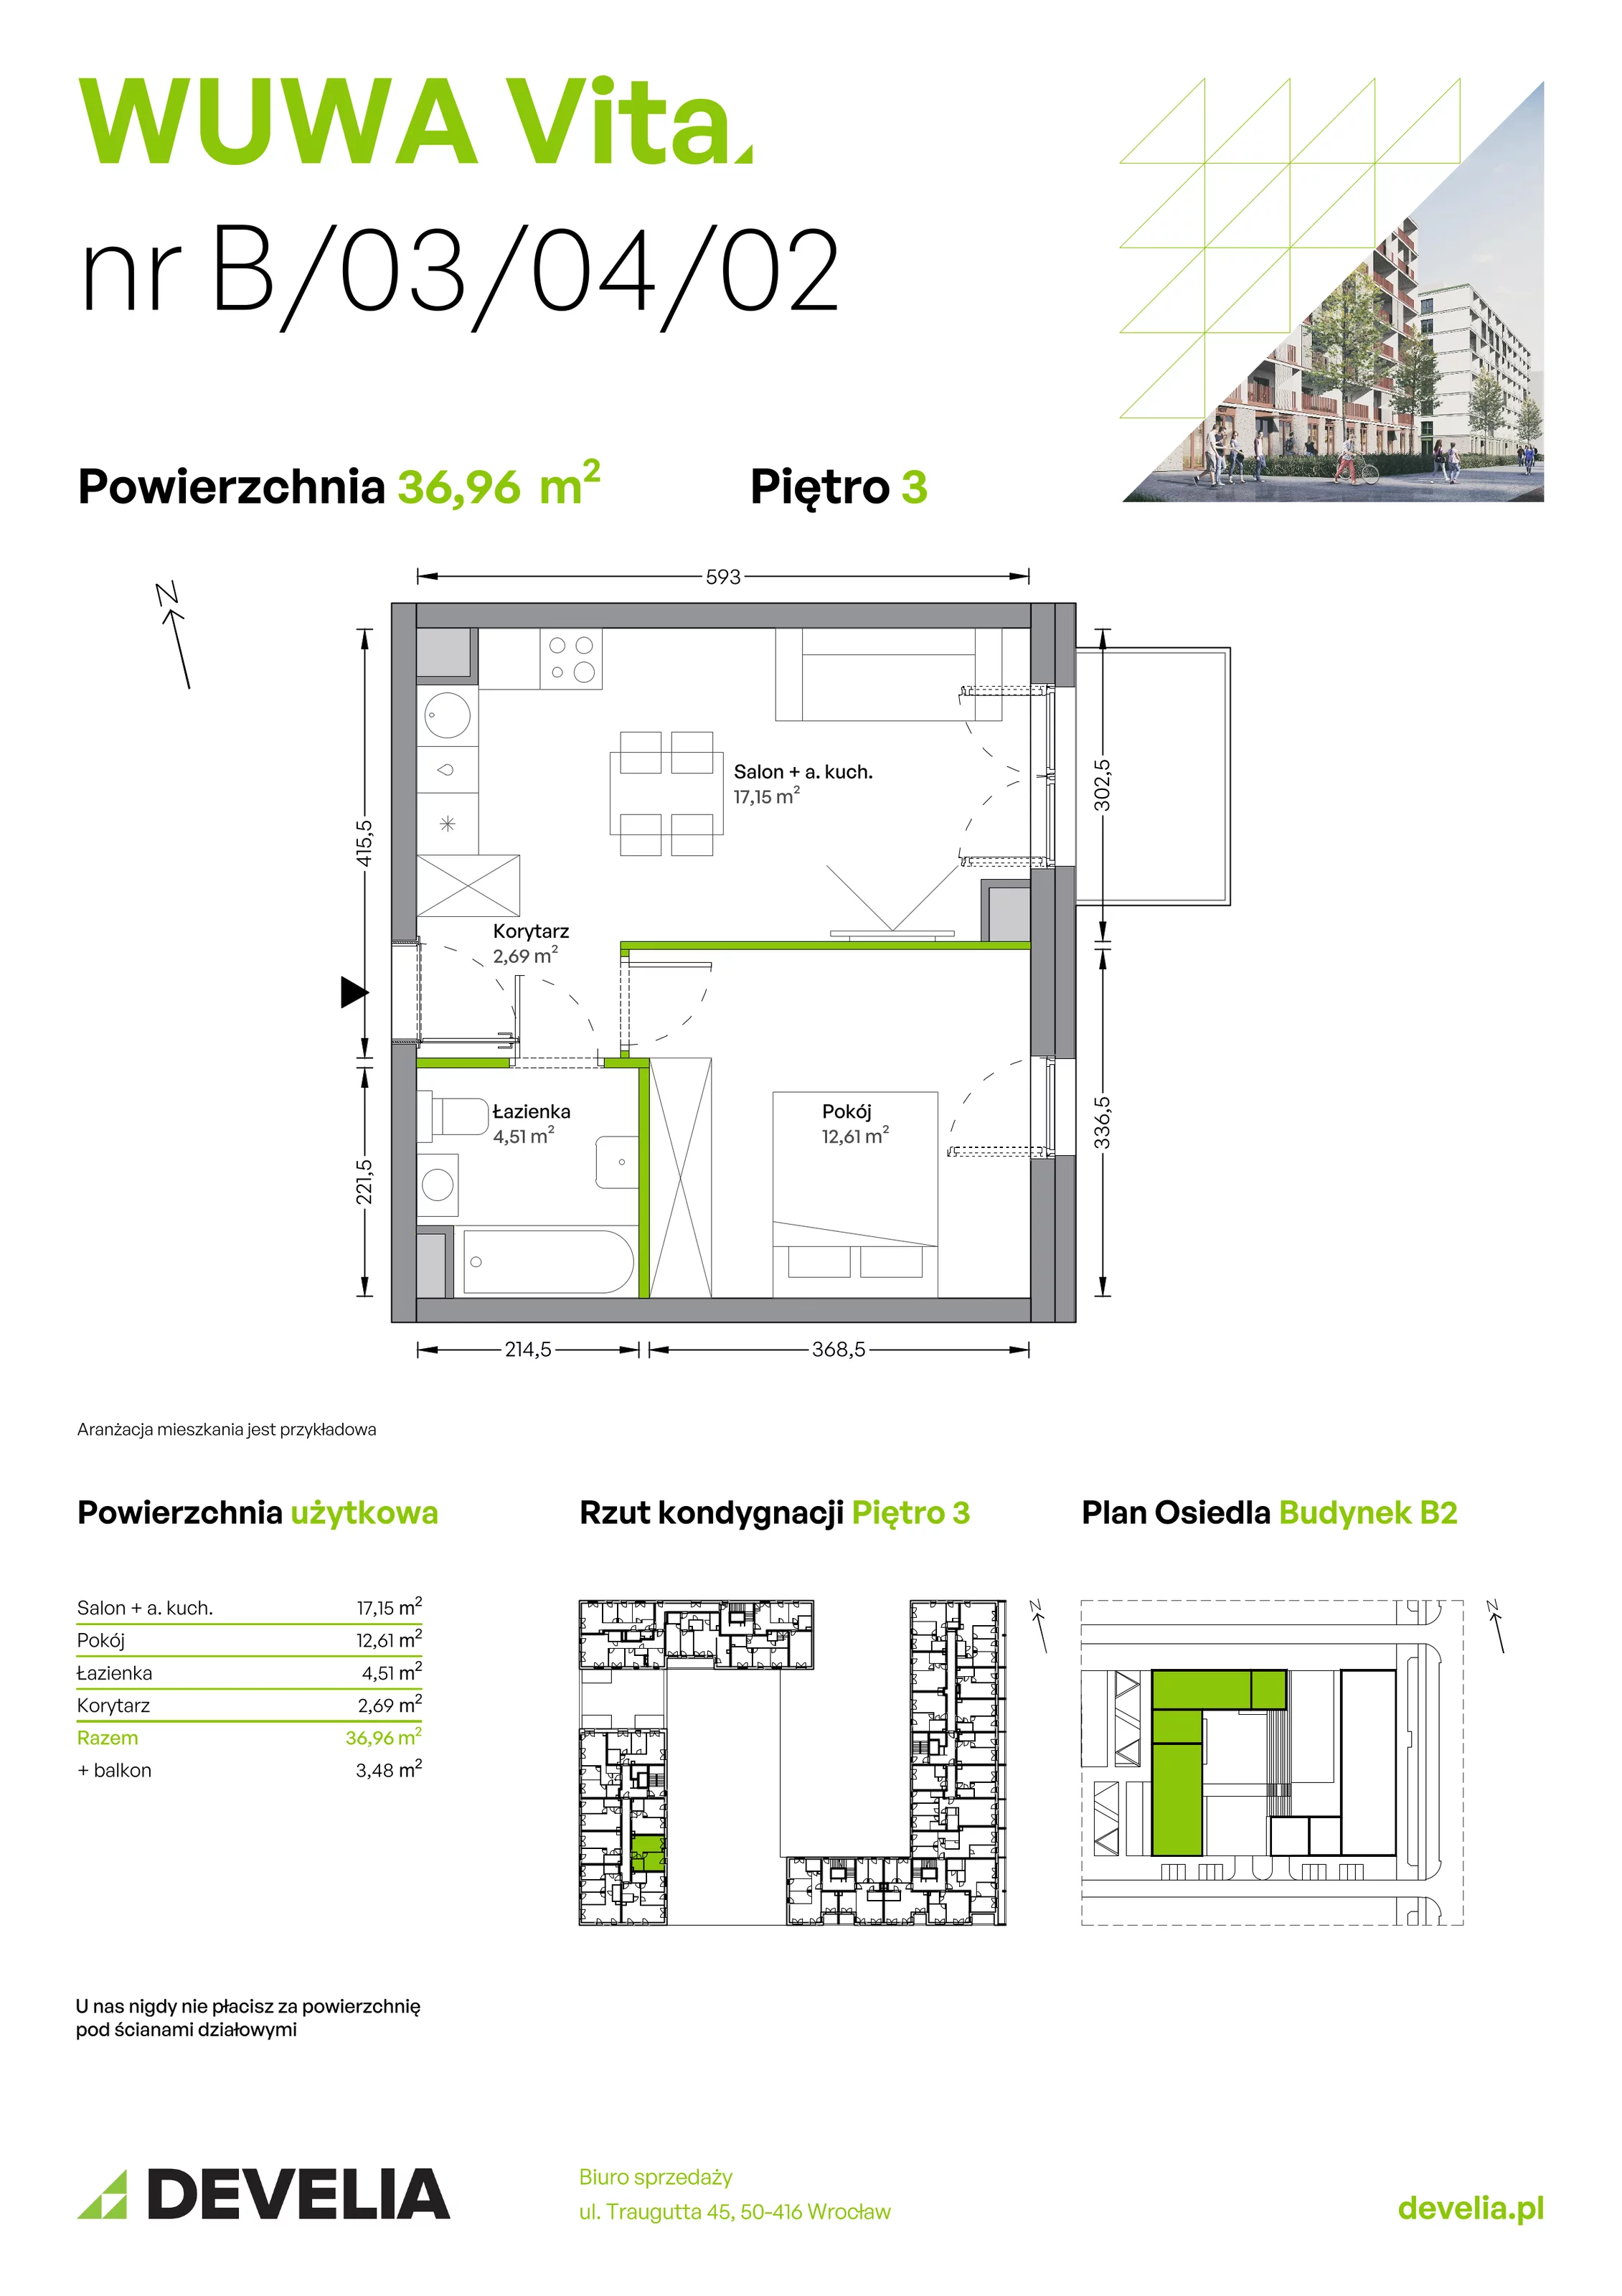 Mieszkanie 36,96 m², piętro 3, oferta nr B.03.04.02, WUWA Vita, Wrocław, Żerniki, Fabryczna, ul. Tadeusza Brzozy